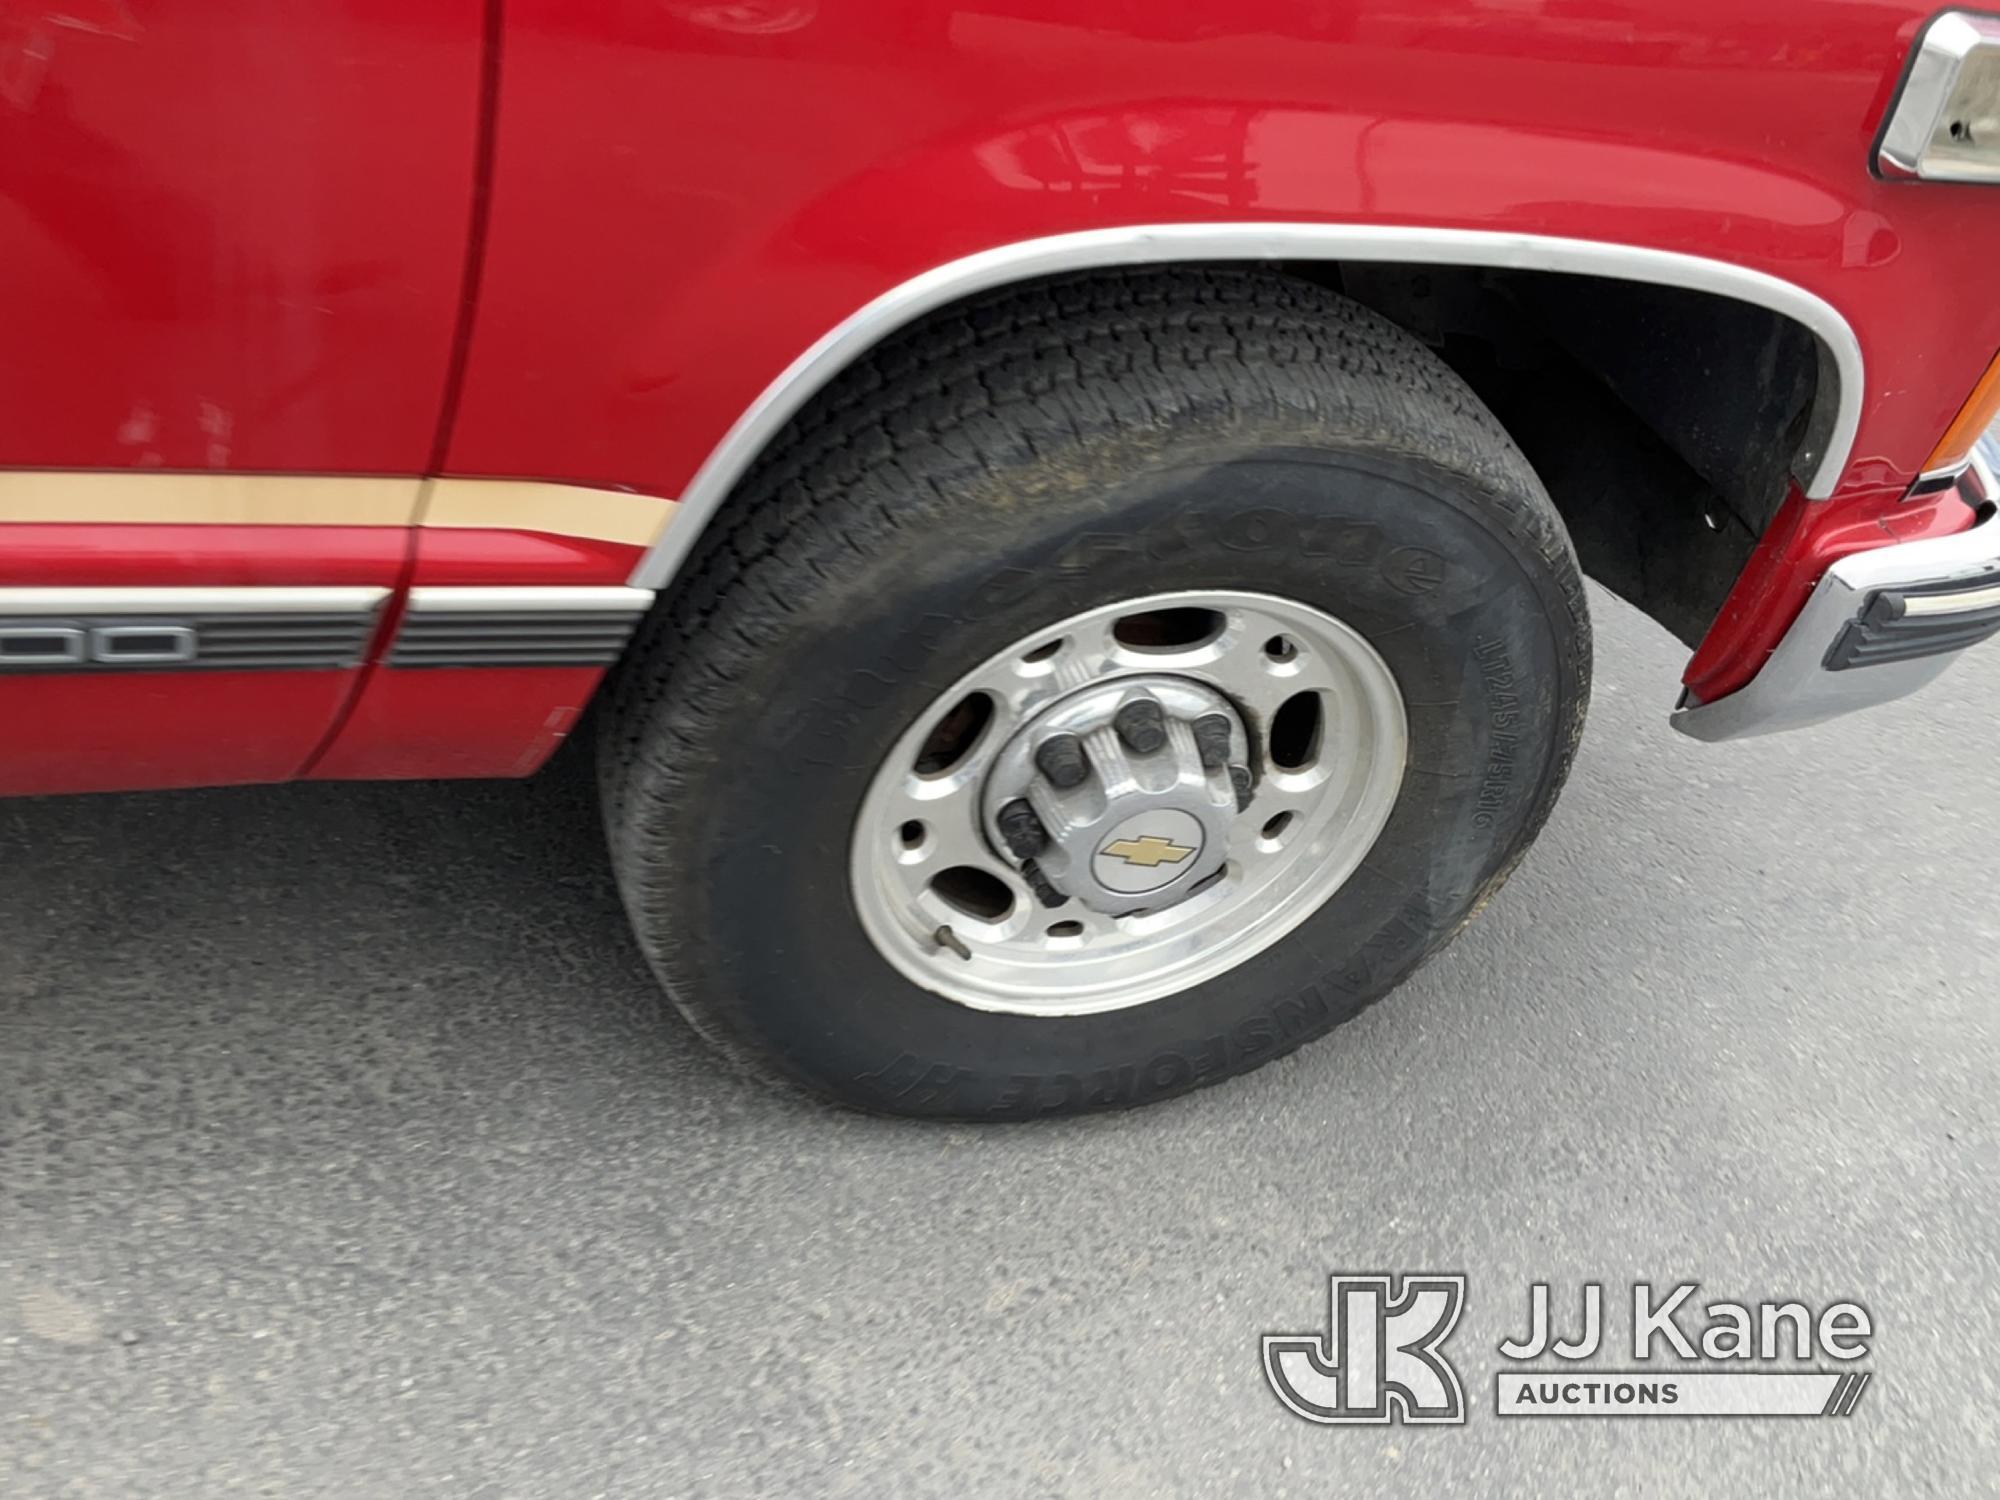 (Jurupa Valley, CA) 1999 Chevrolet Suburban 4-Door Sport Utility Vehicle Runs & Moves) (Interior Str